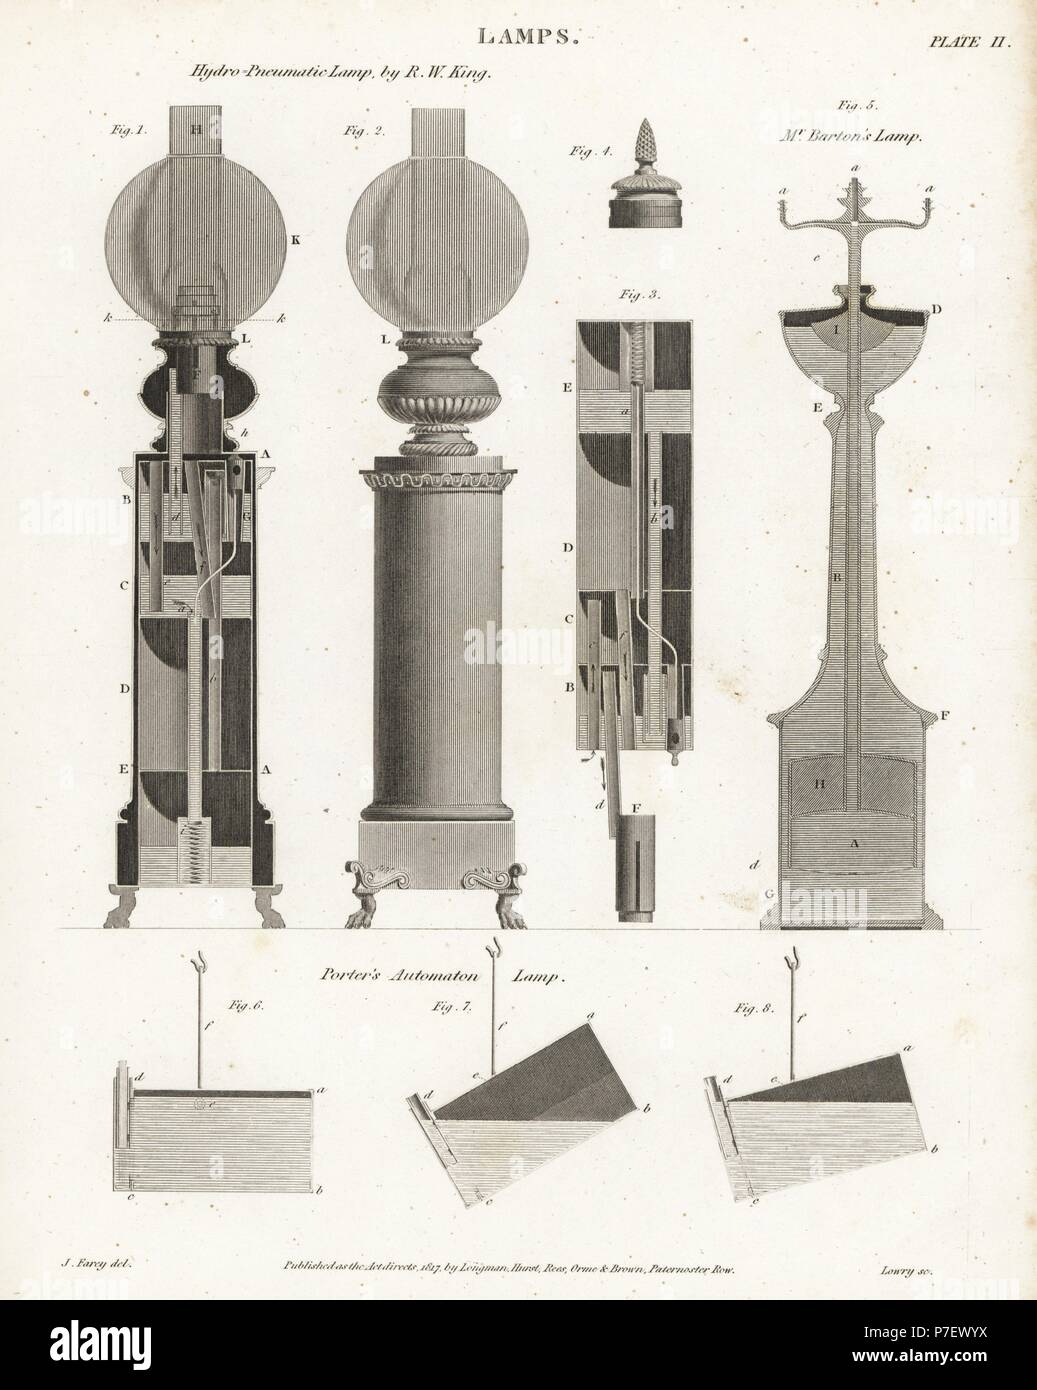 Lampade a olio, compresa la sospensione idropneumatica lampada progettata  da R. W. RE, Barton olio della lampada, e John Porter's automa lampada.  Incisione su rame da Wilson Lowry dopo un disegno di